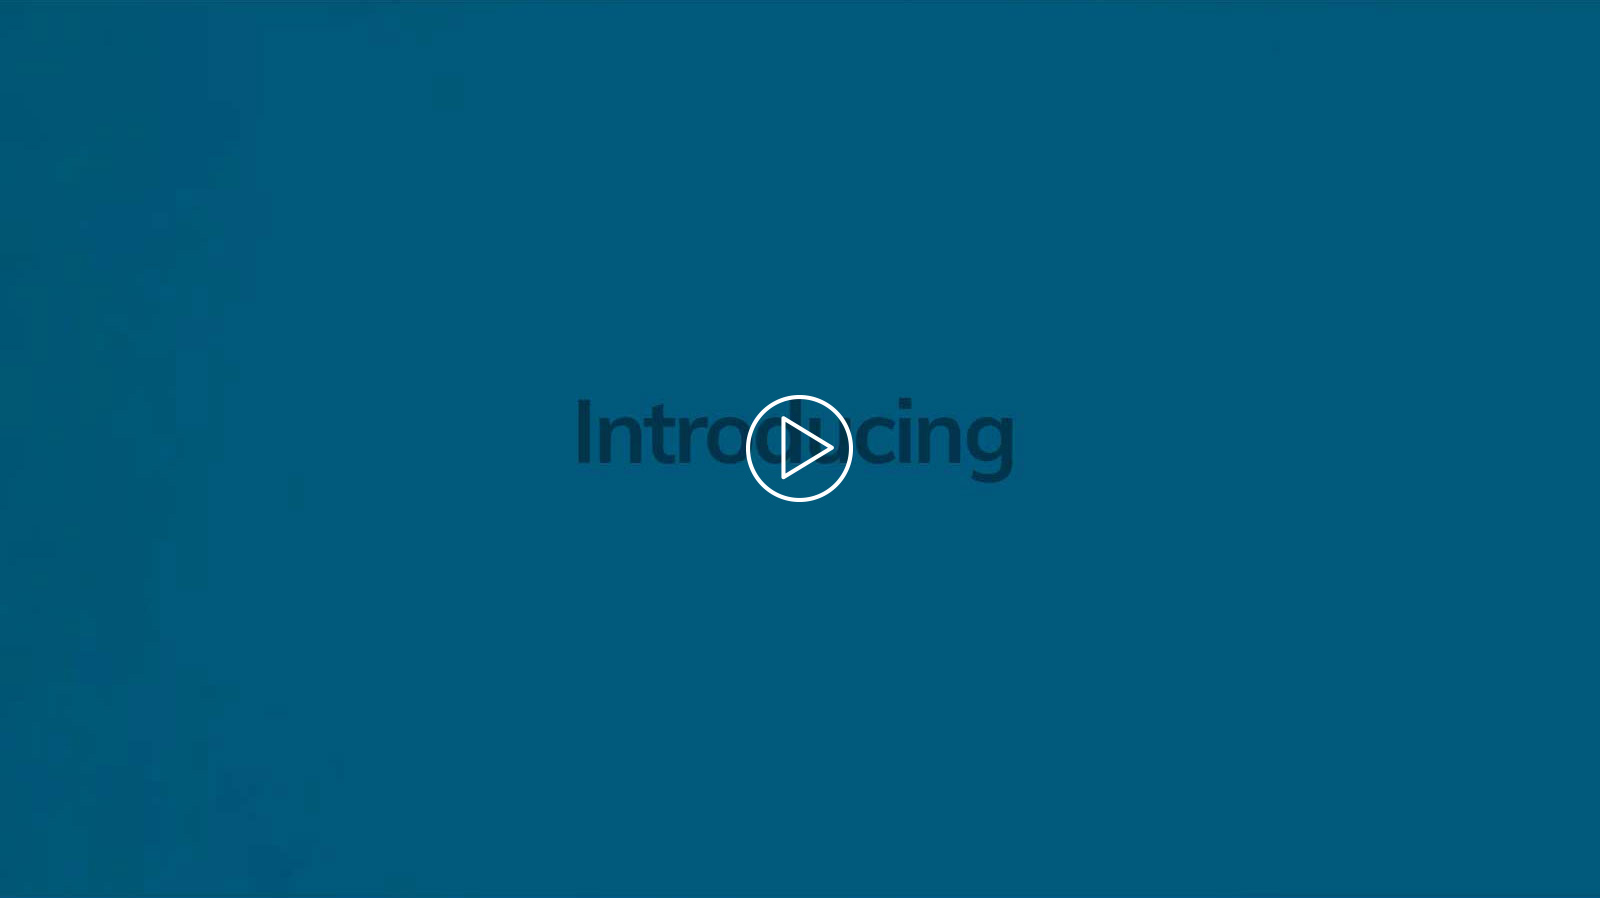 Bank of Burlington - Introducing video